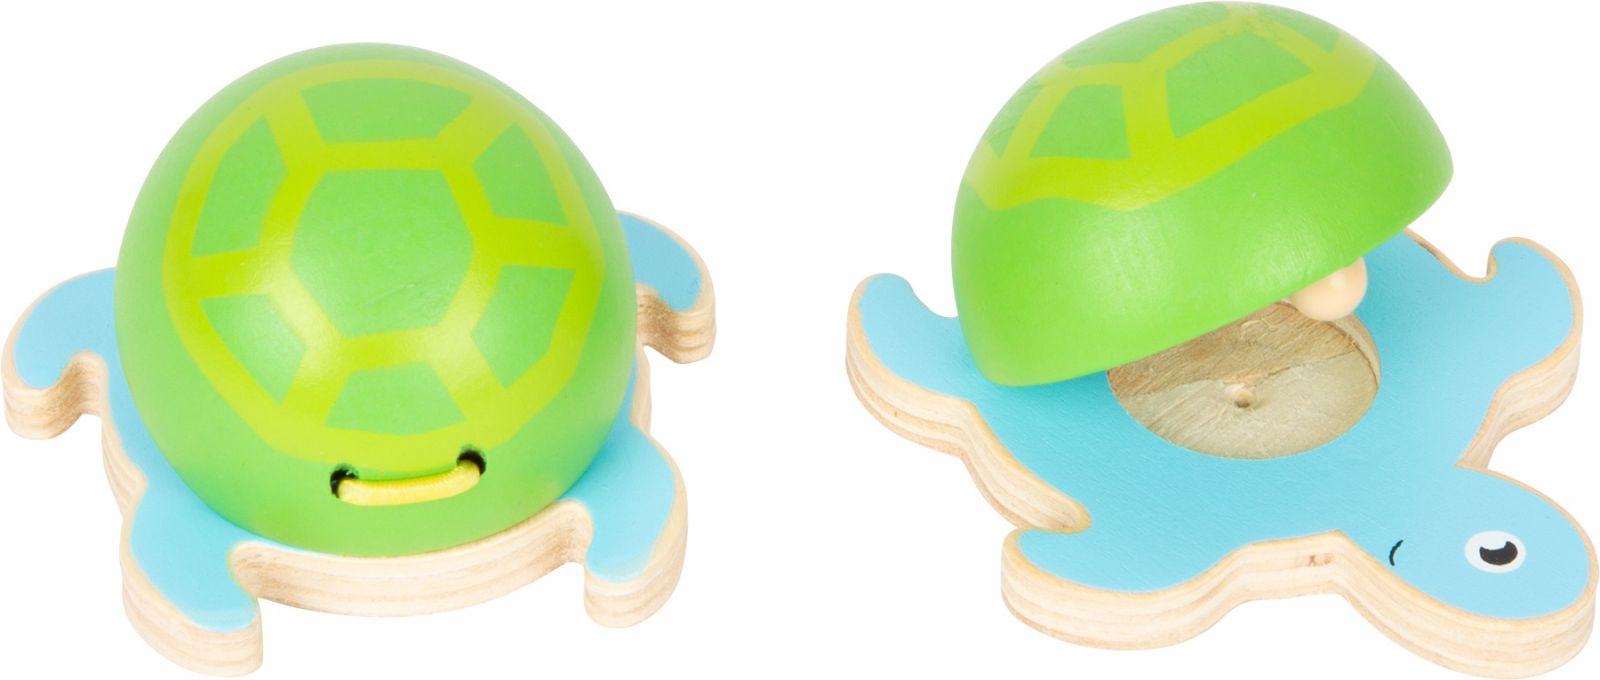 Dřevěné hračky small foot Kastaněty mořští živočichové modro-zelená želvička 1 ks